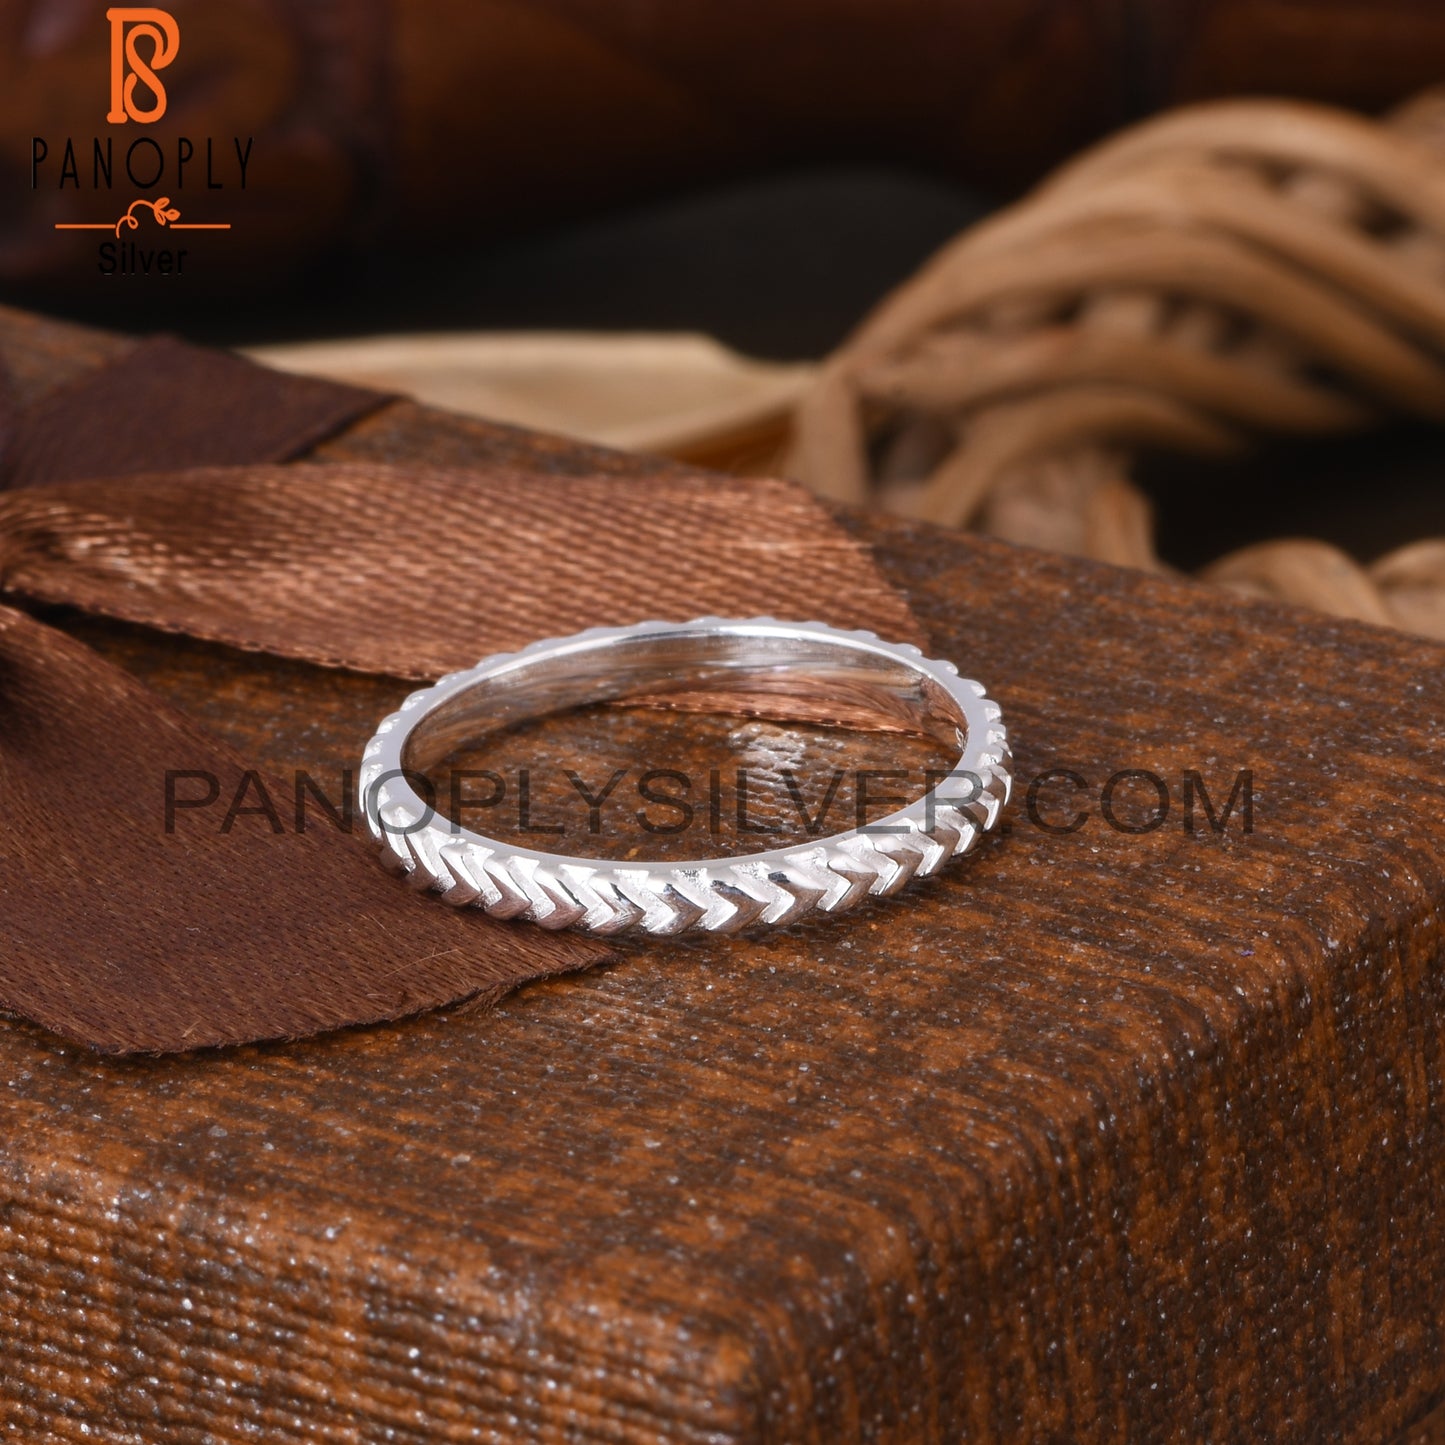 Handmade S 925 Ring Gift Idea For Sister